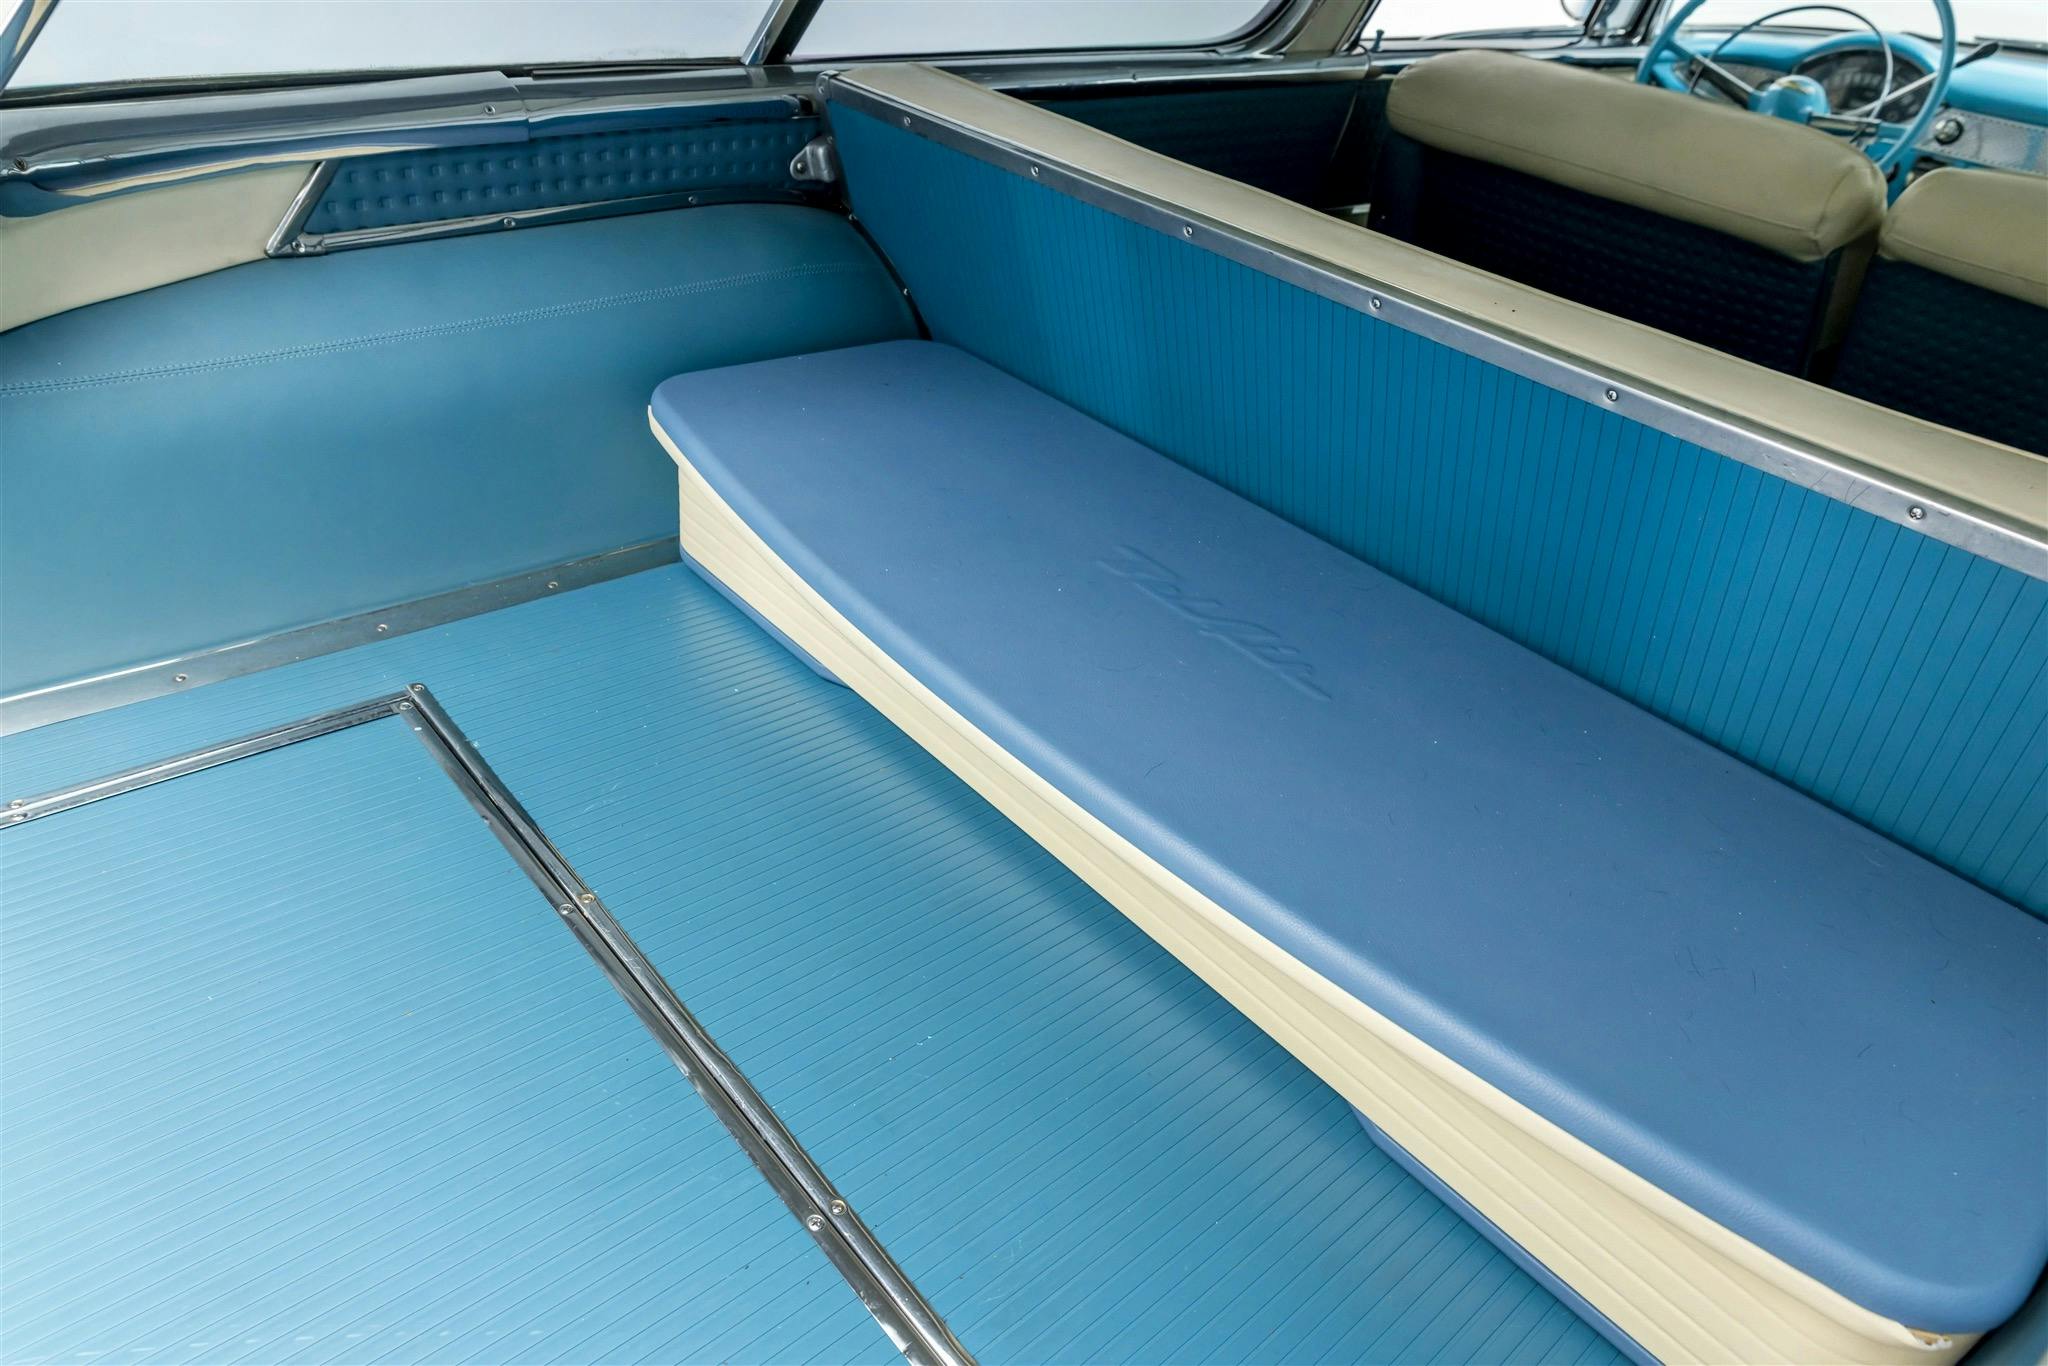 Bruce Willis 1955 Chevrolet Bel Air Nomad interior rear cabin room